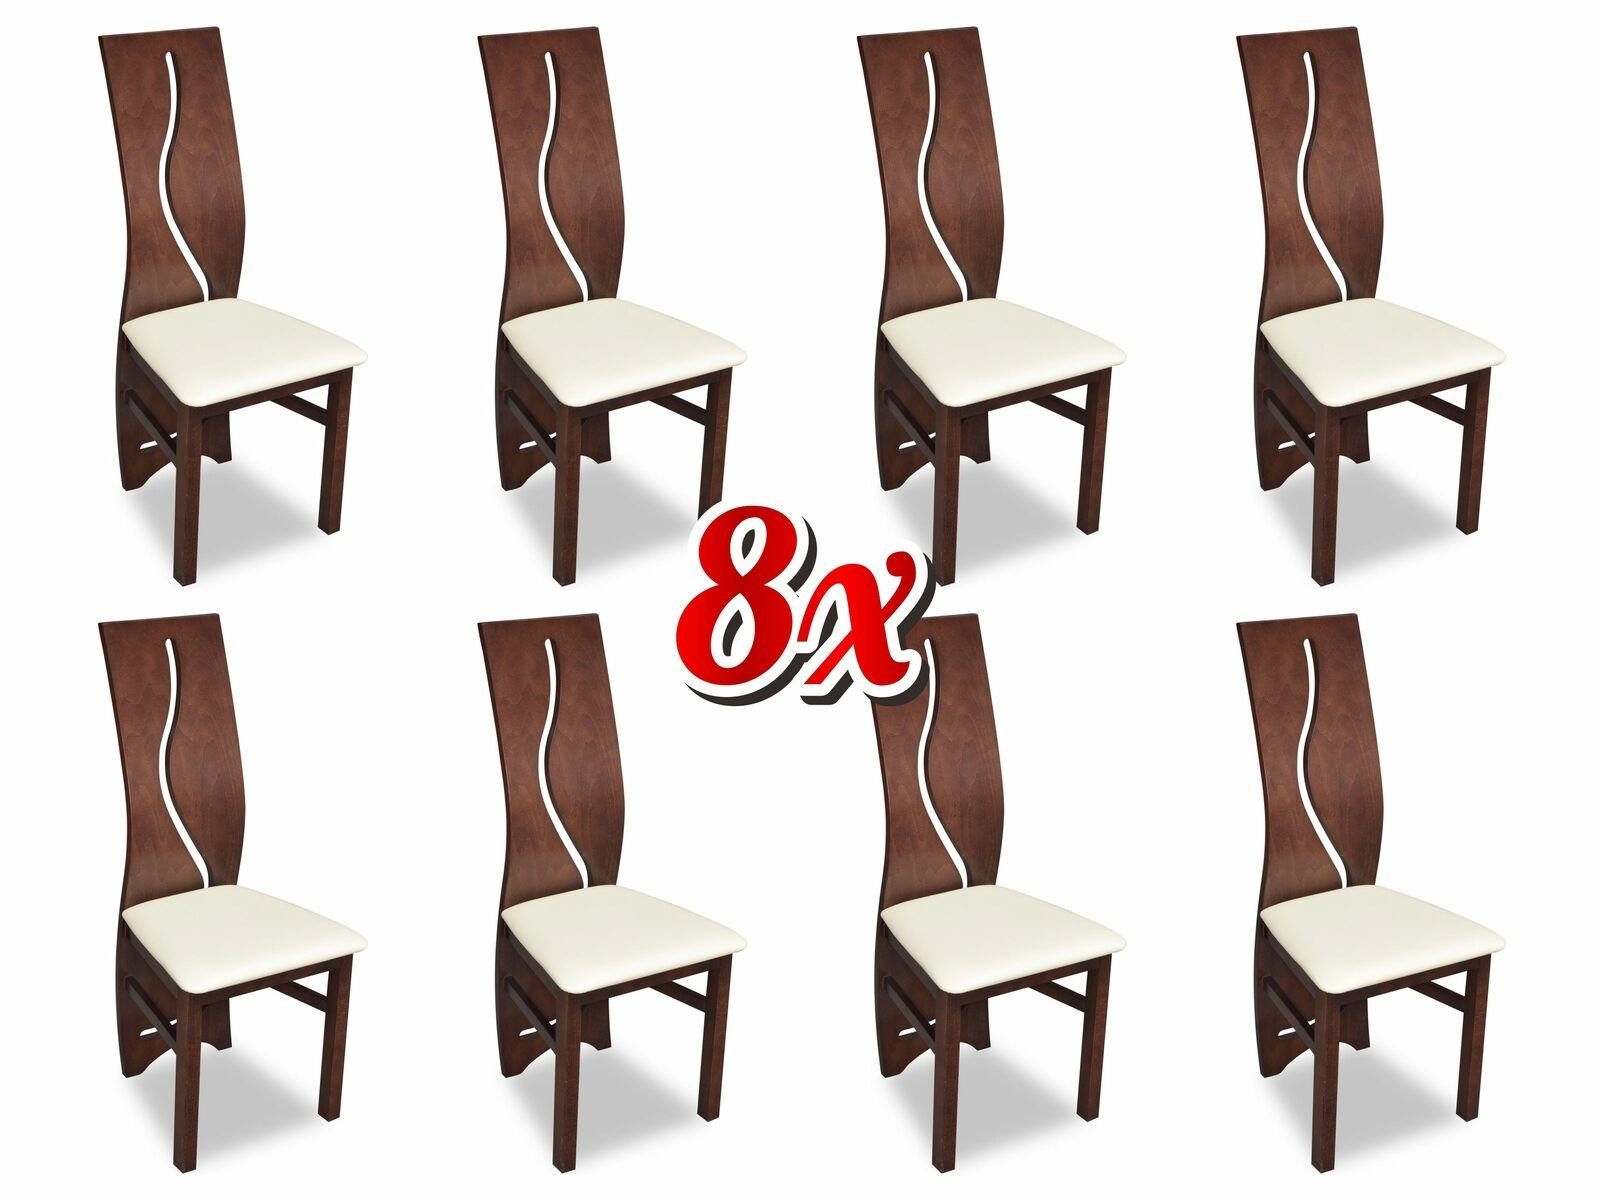 JVmoebel Stuhl, Garnitur Sessel Komplett Design Neu 8x Set Polster Lehn Stuhl Modernes Stühle